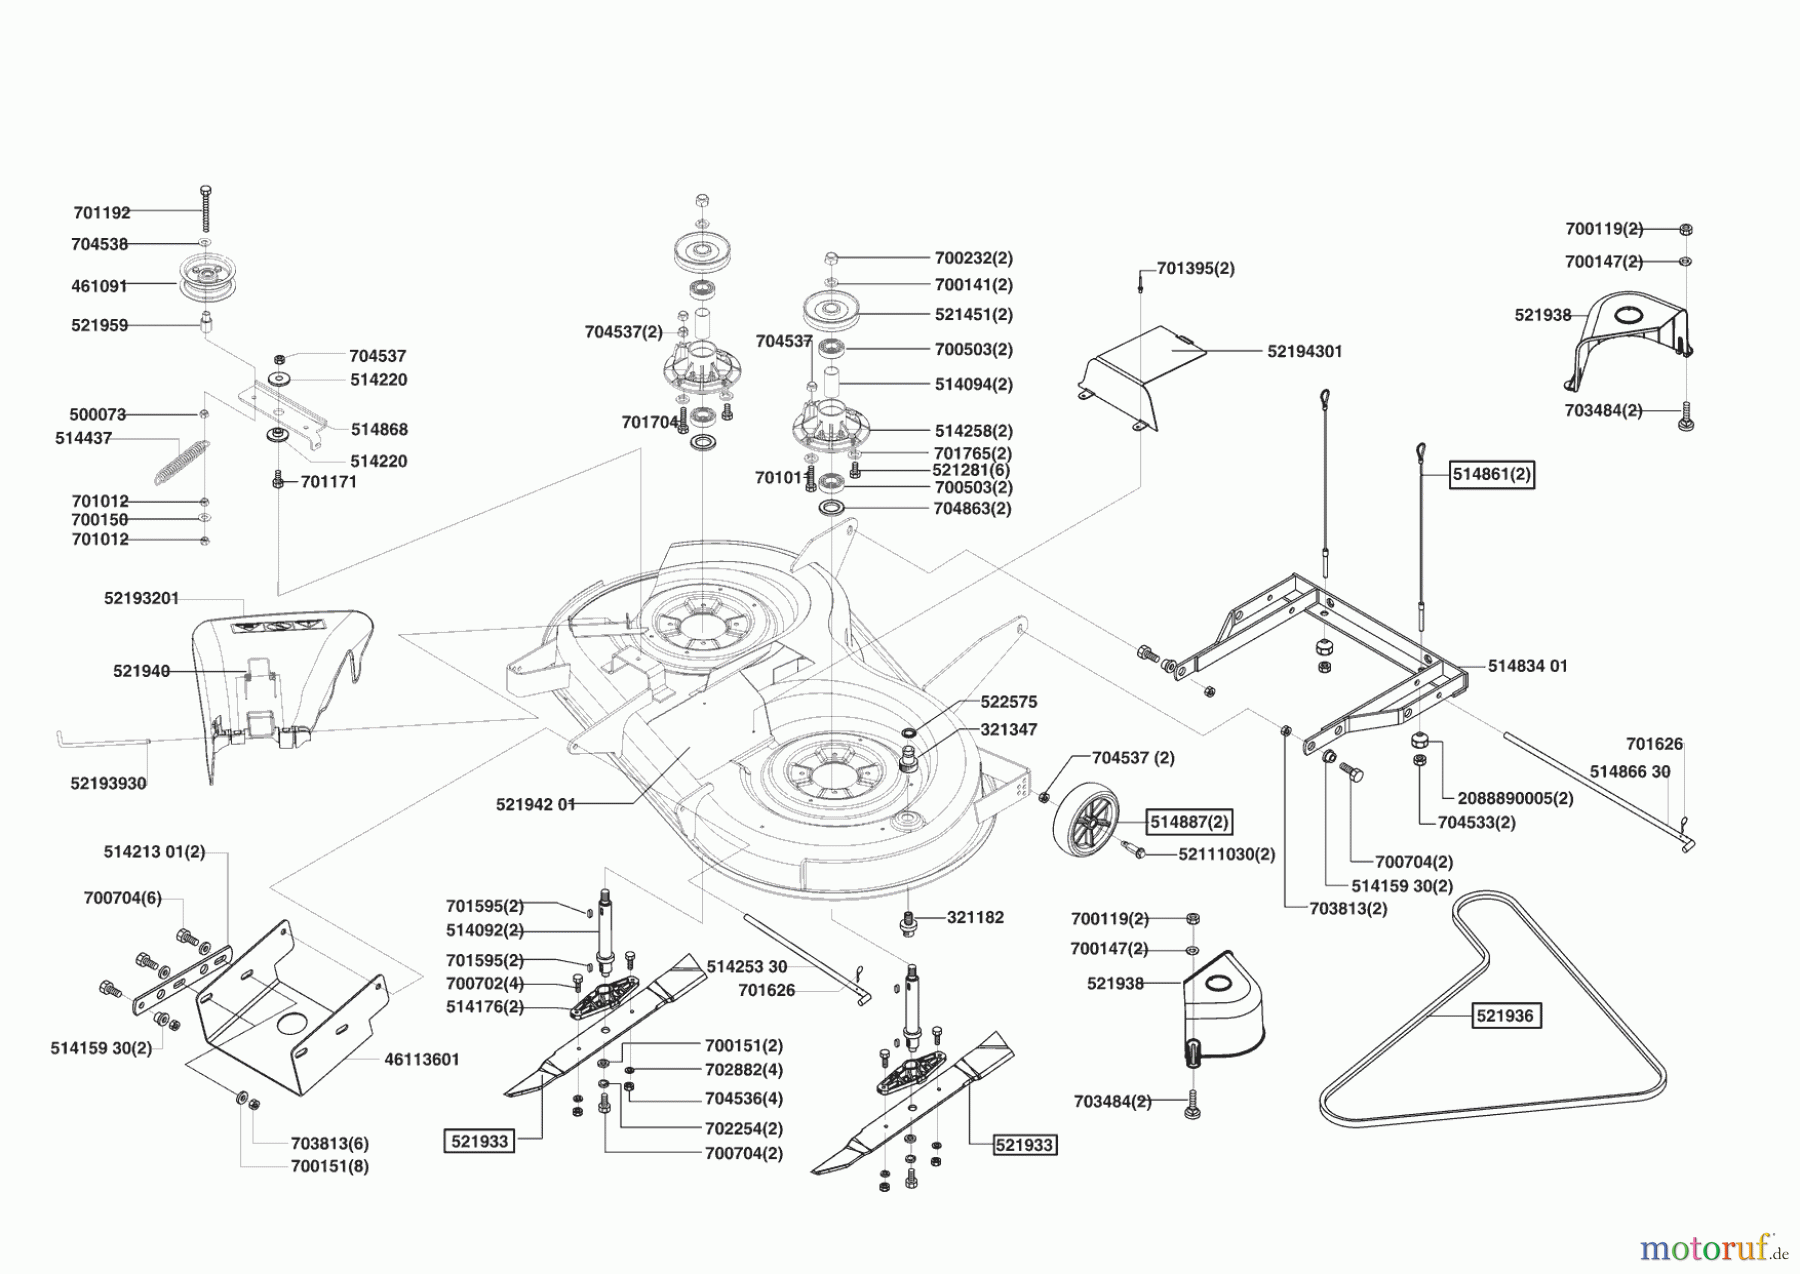  Powerline Gartentechnik Rasentraktor T 15-102 HDS ab 04/2004 Seite 5